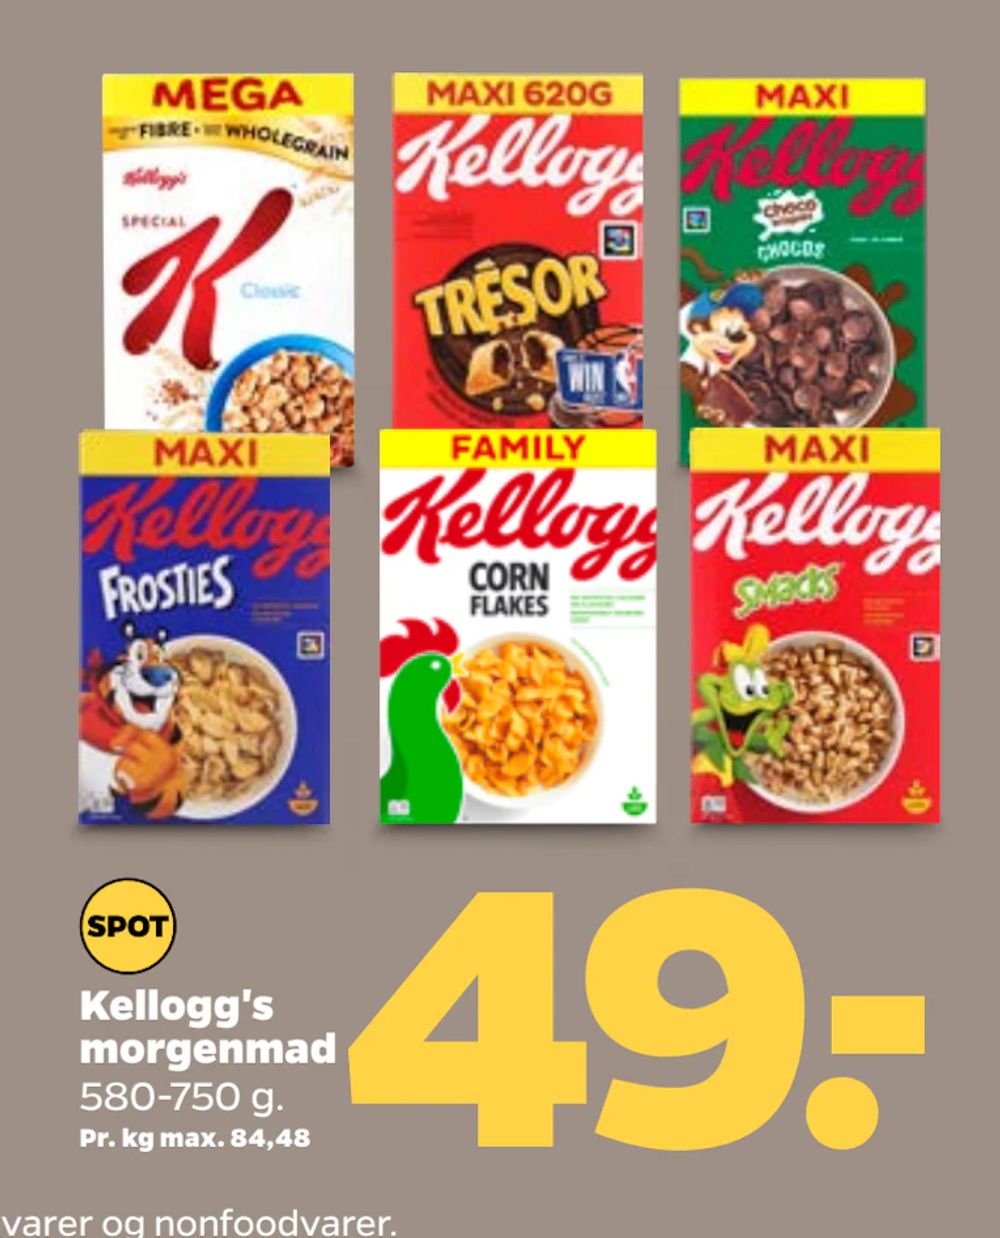 Tilbud på Kellogg's morgenmad fra Netto til 49 kr.